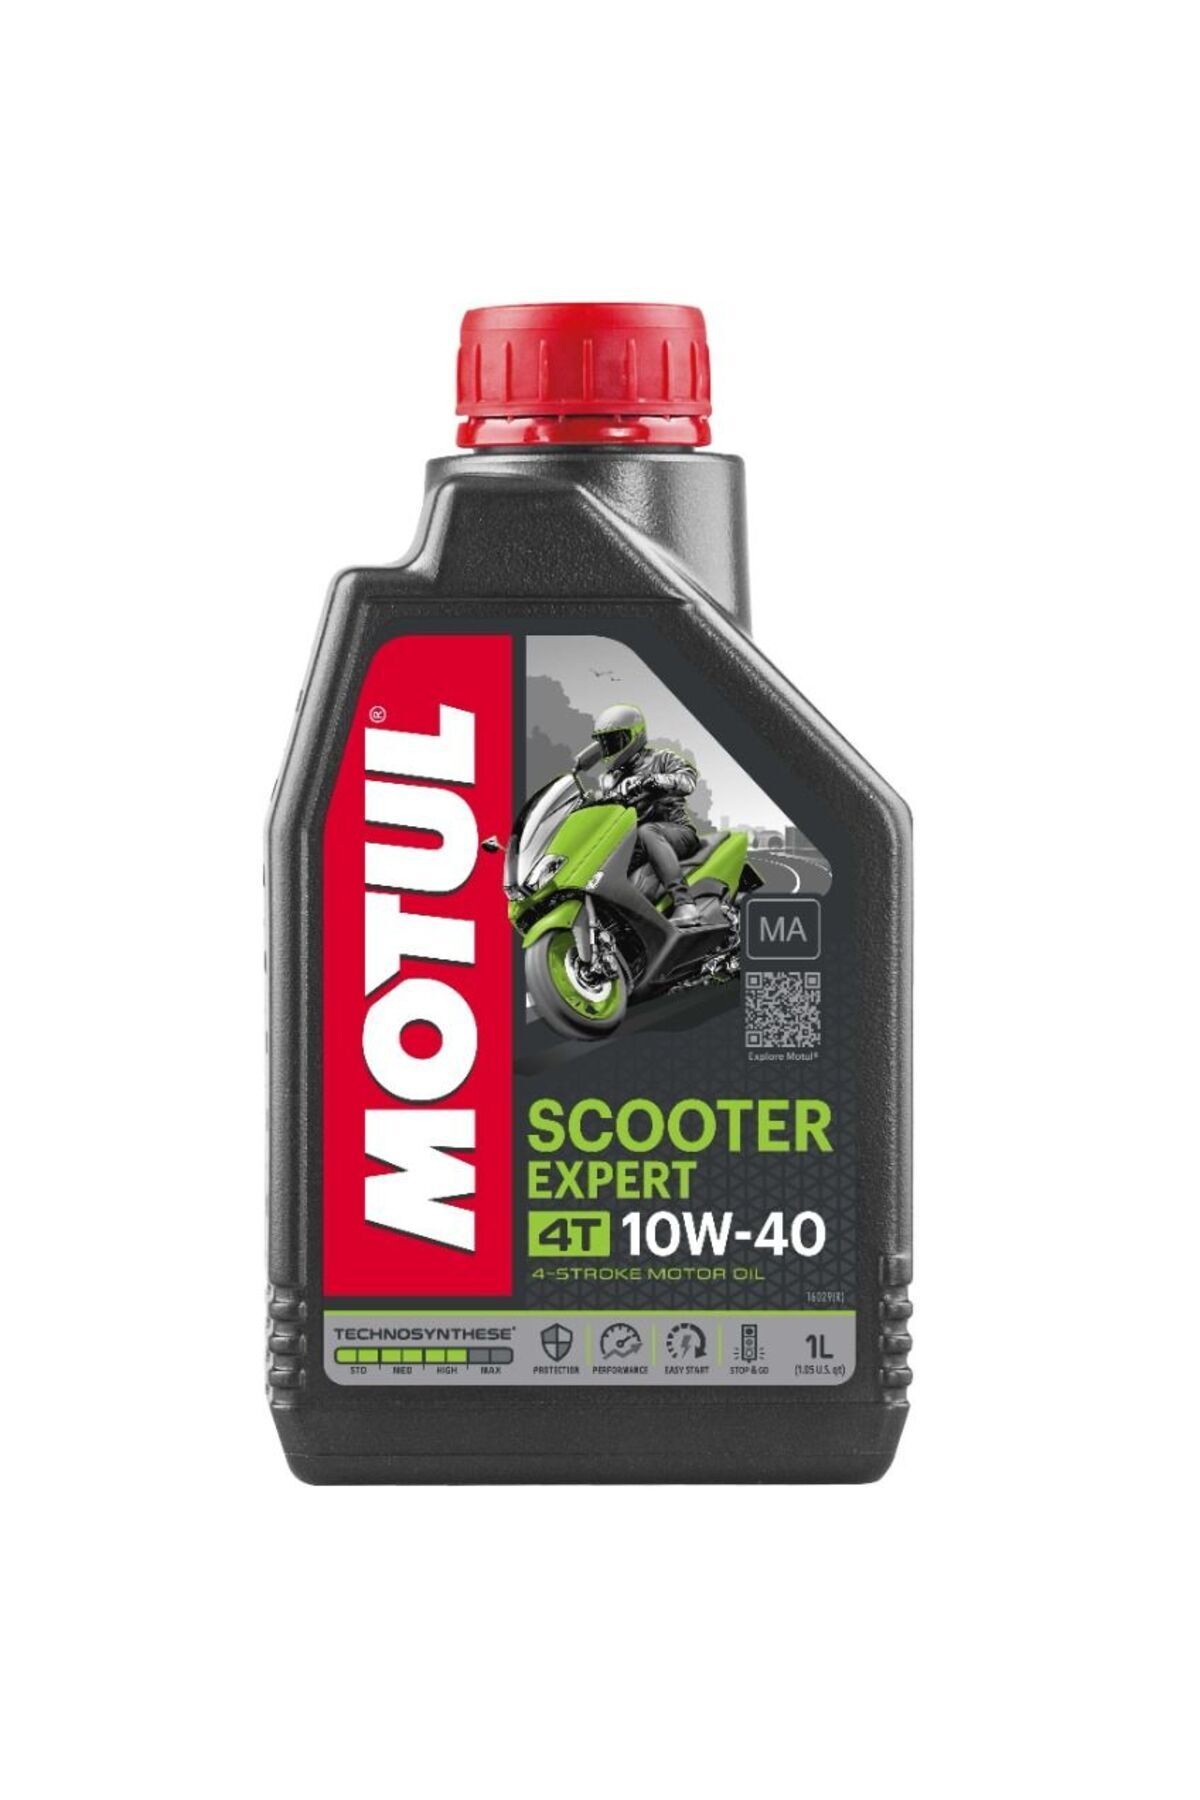 Motul Scooter Expert 10w-40